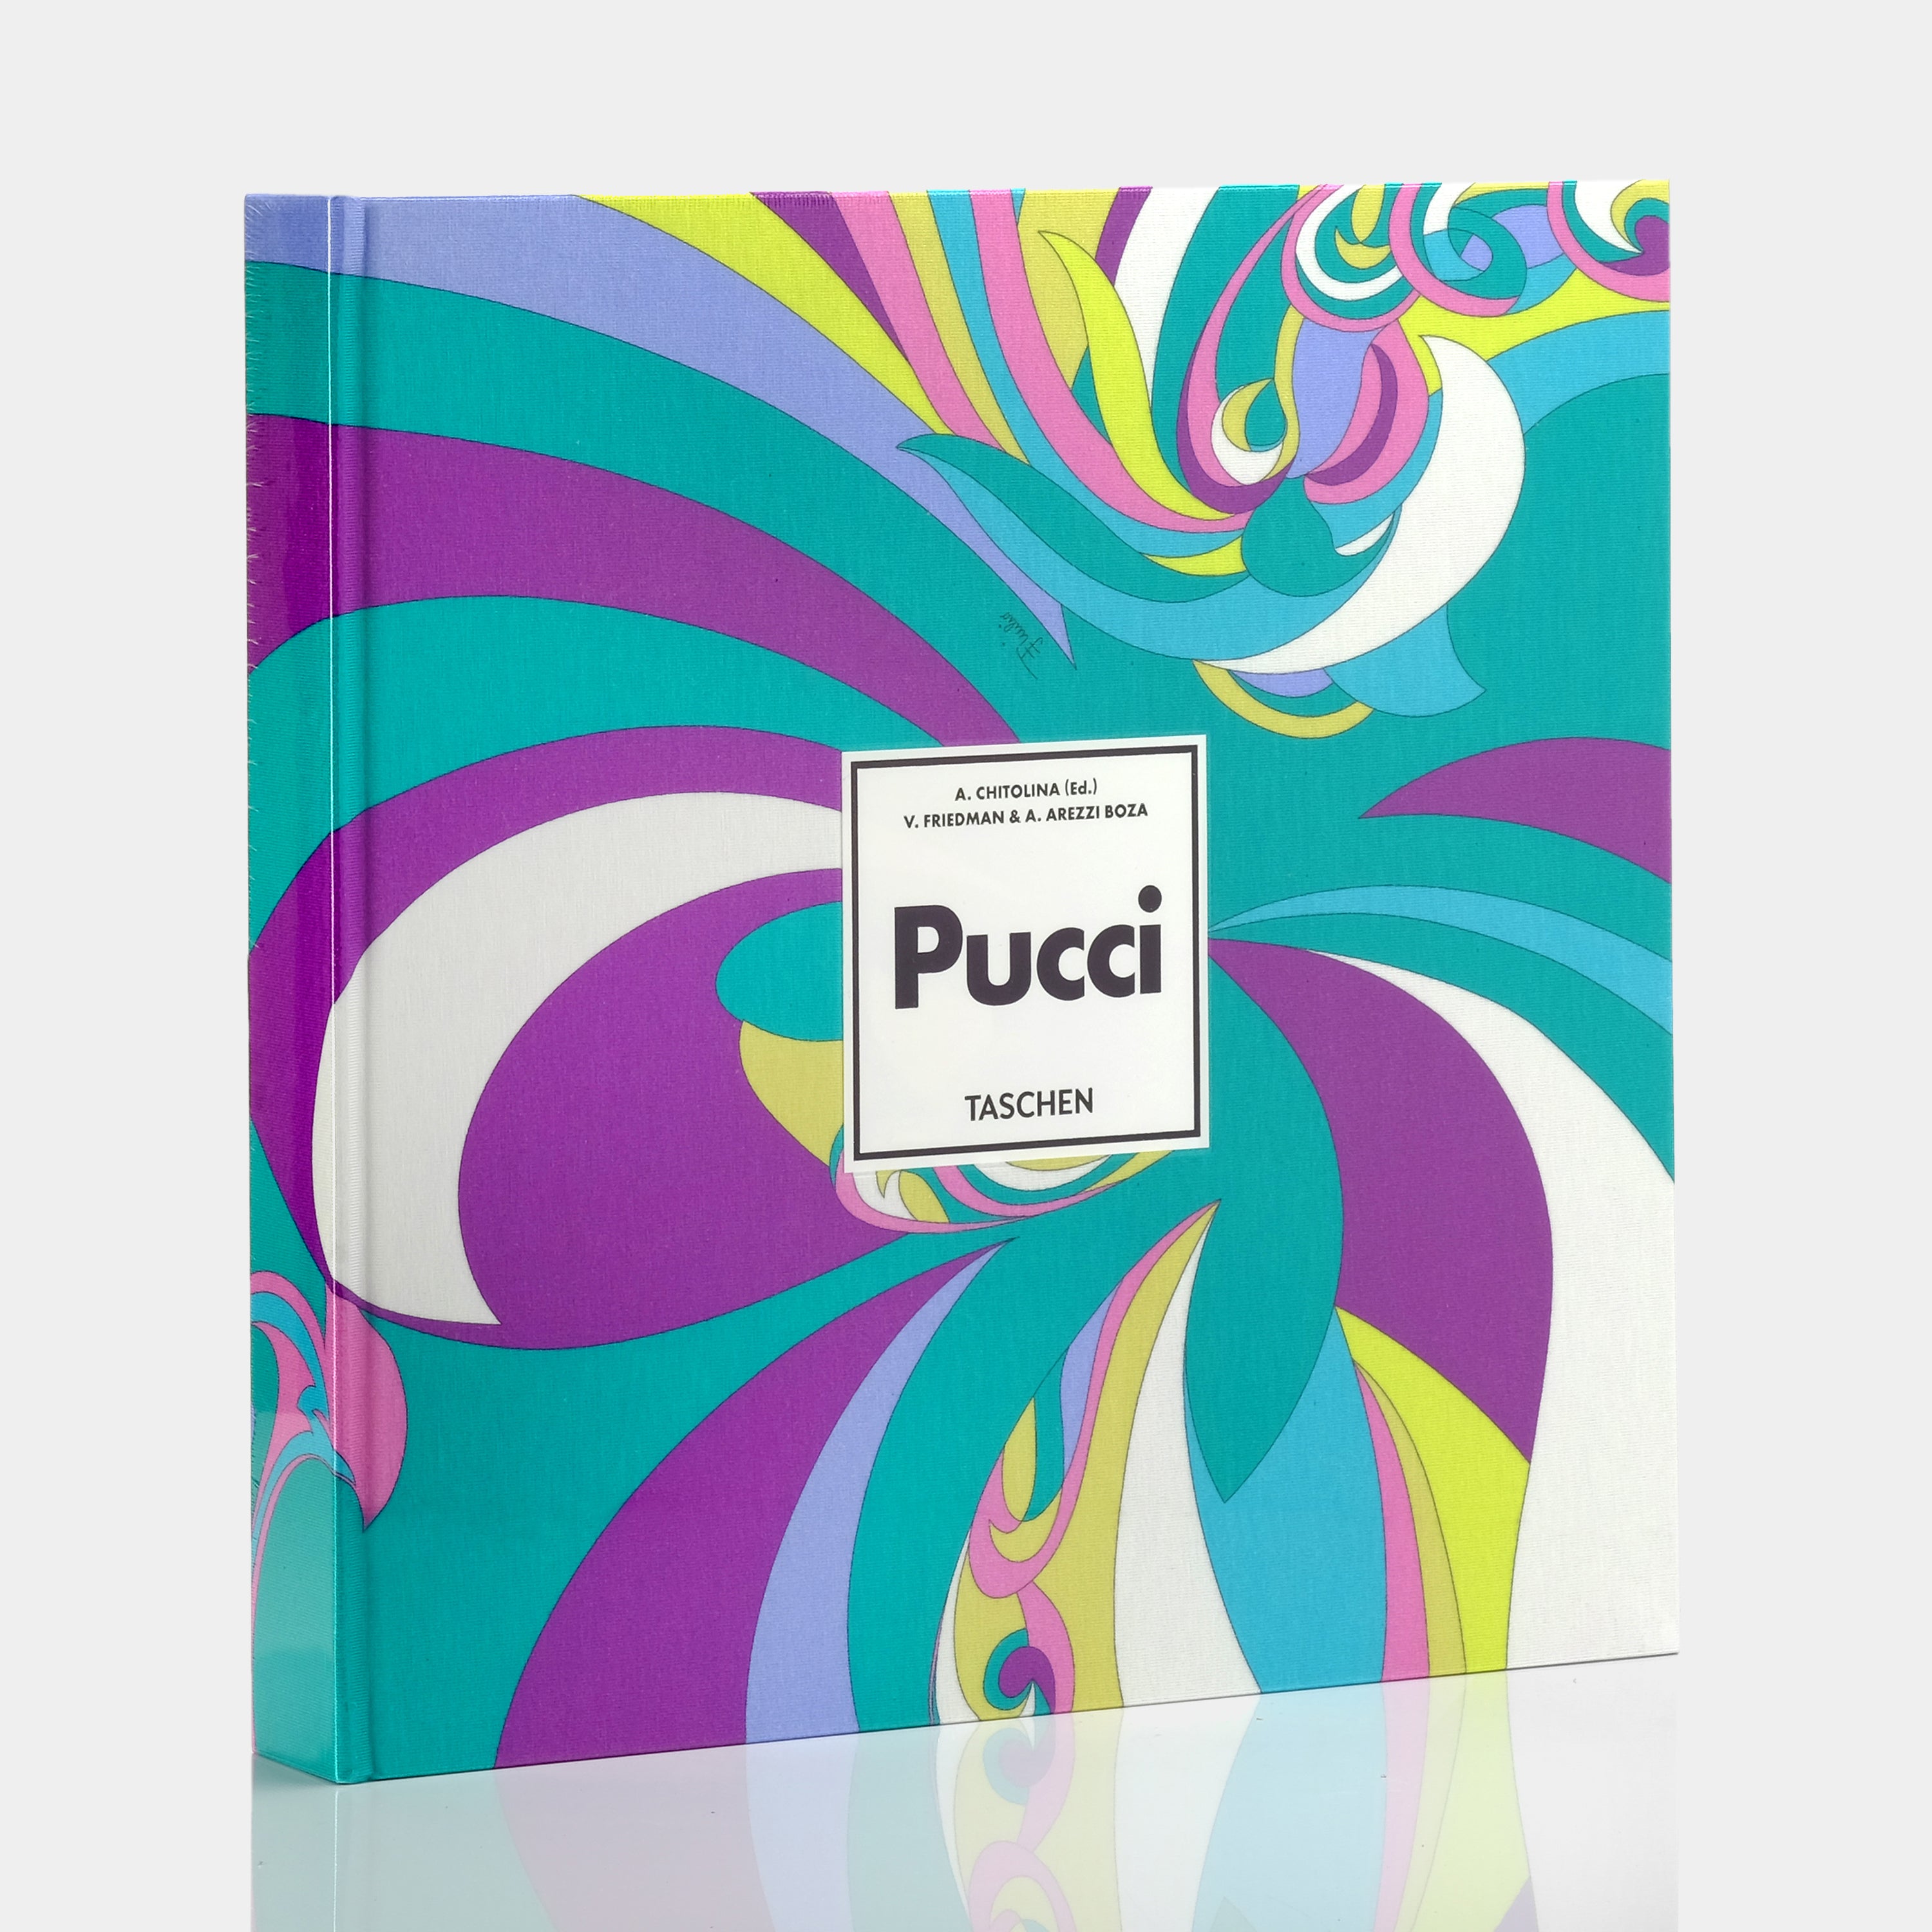 Pucci (Updated Edition) by Vanessa Friedman XL Taschen Book